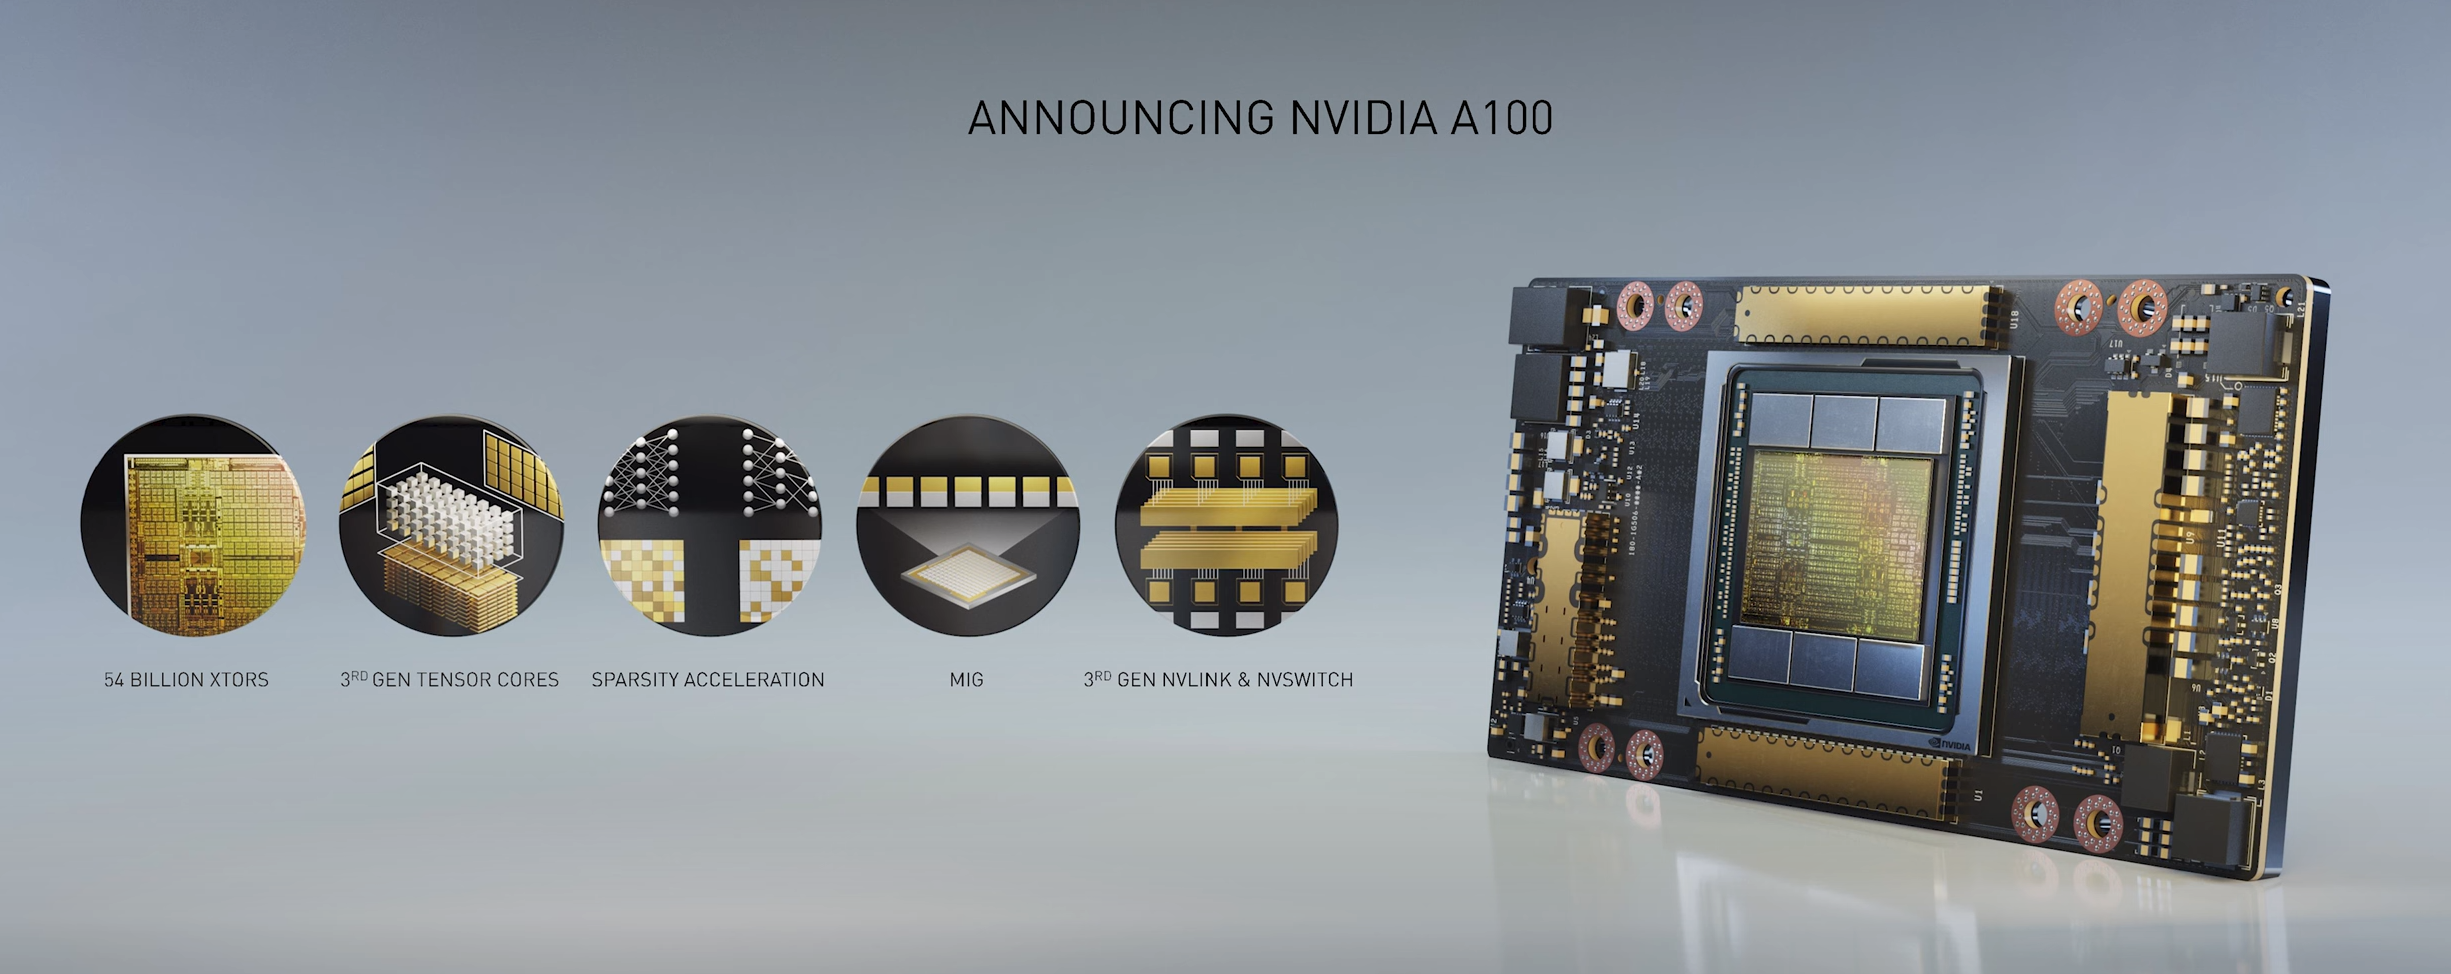 Nvidia DGX A100